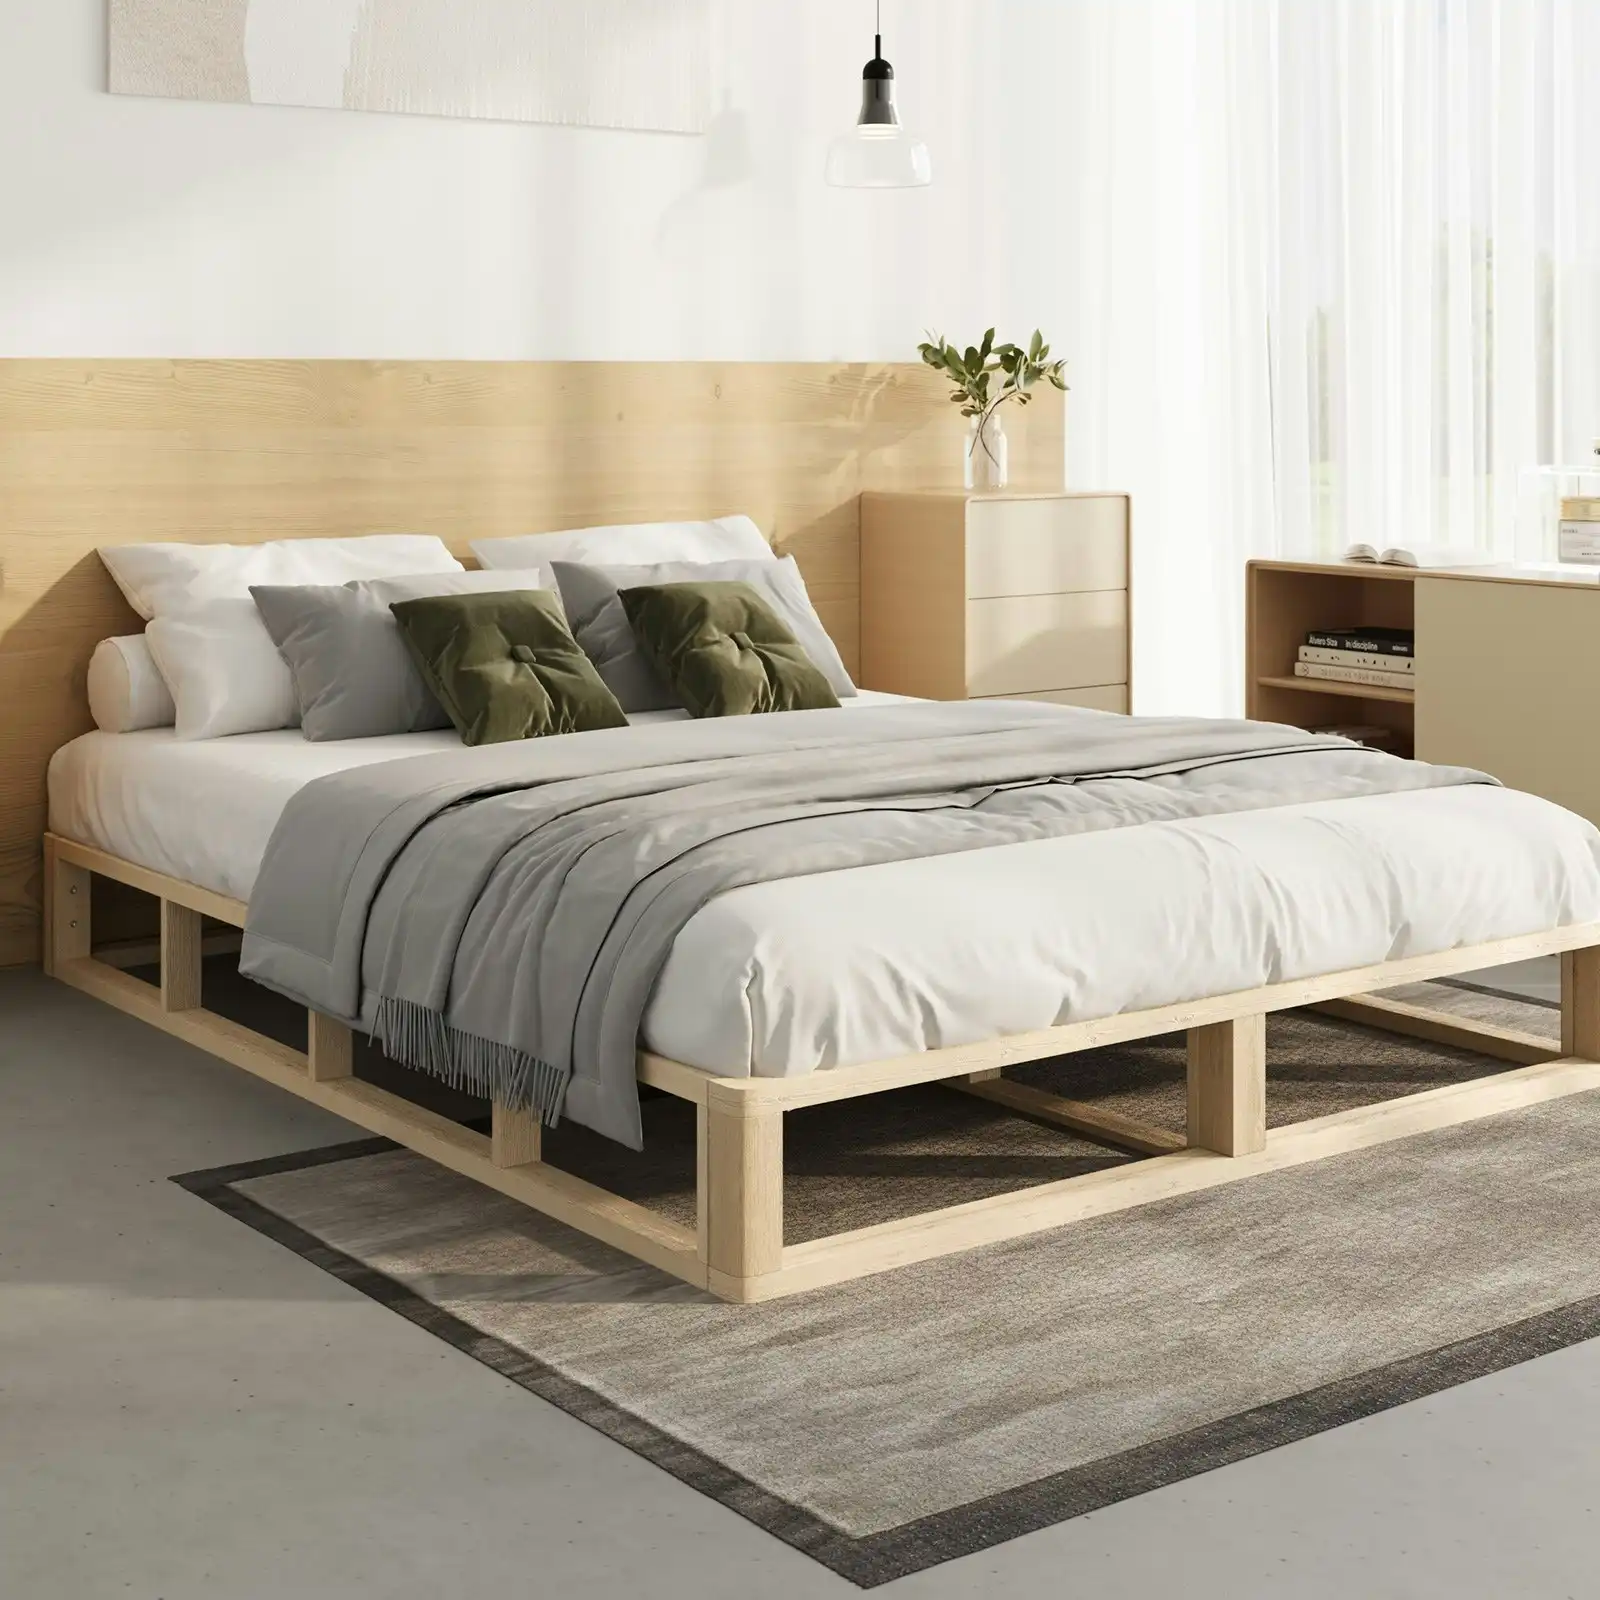 Oikiture Bed Frame King Single Bed Base Wooden Platform Cage-like Base